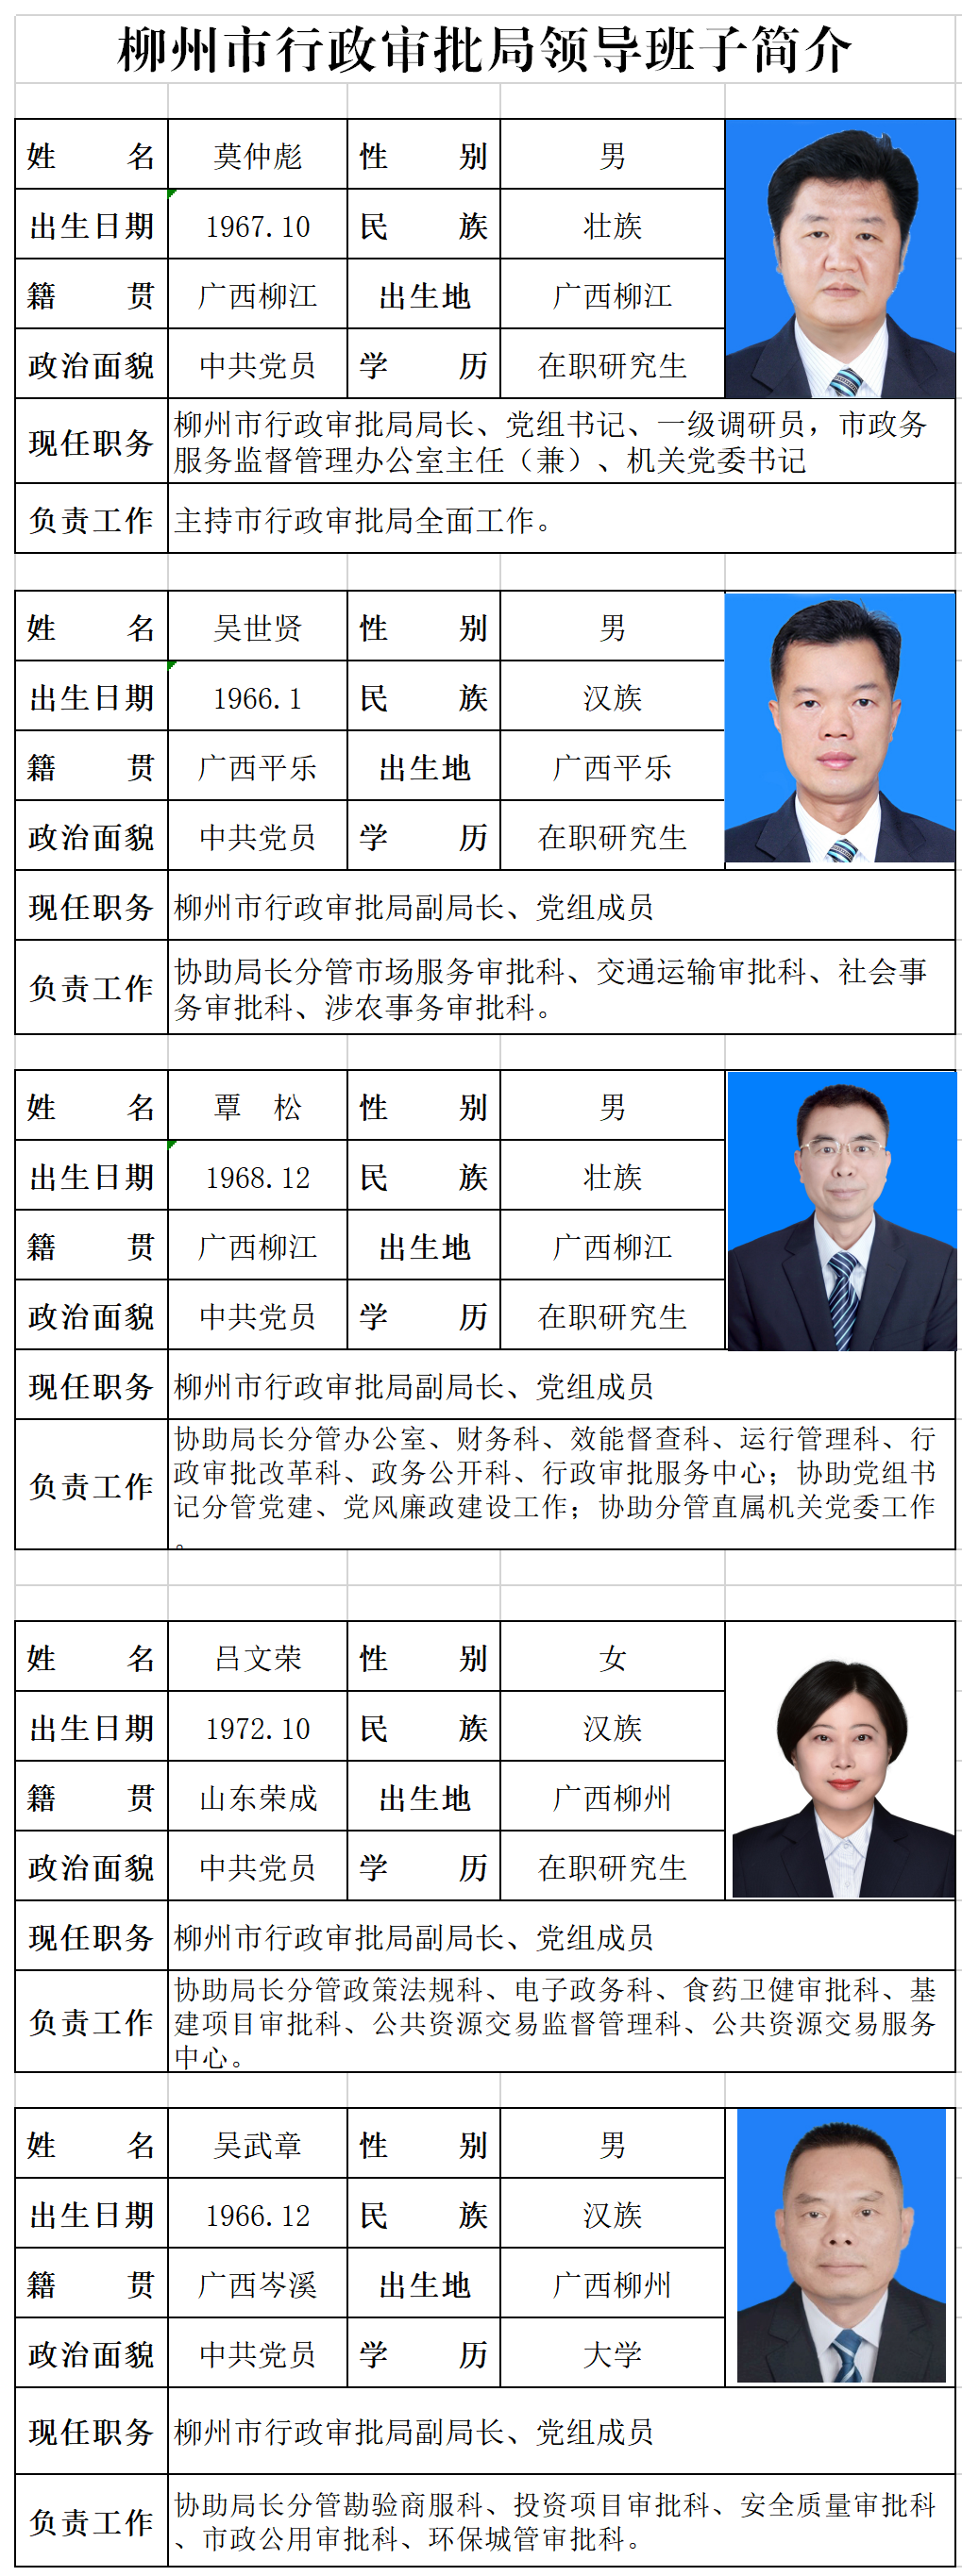 柳州市审批局领导成员